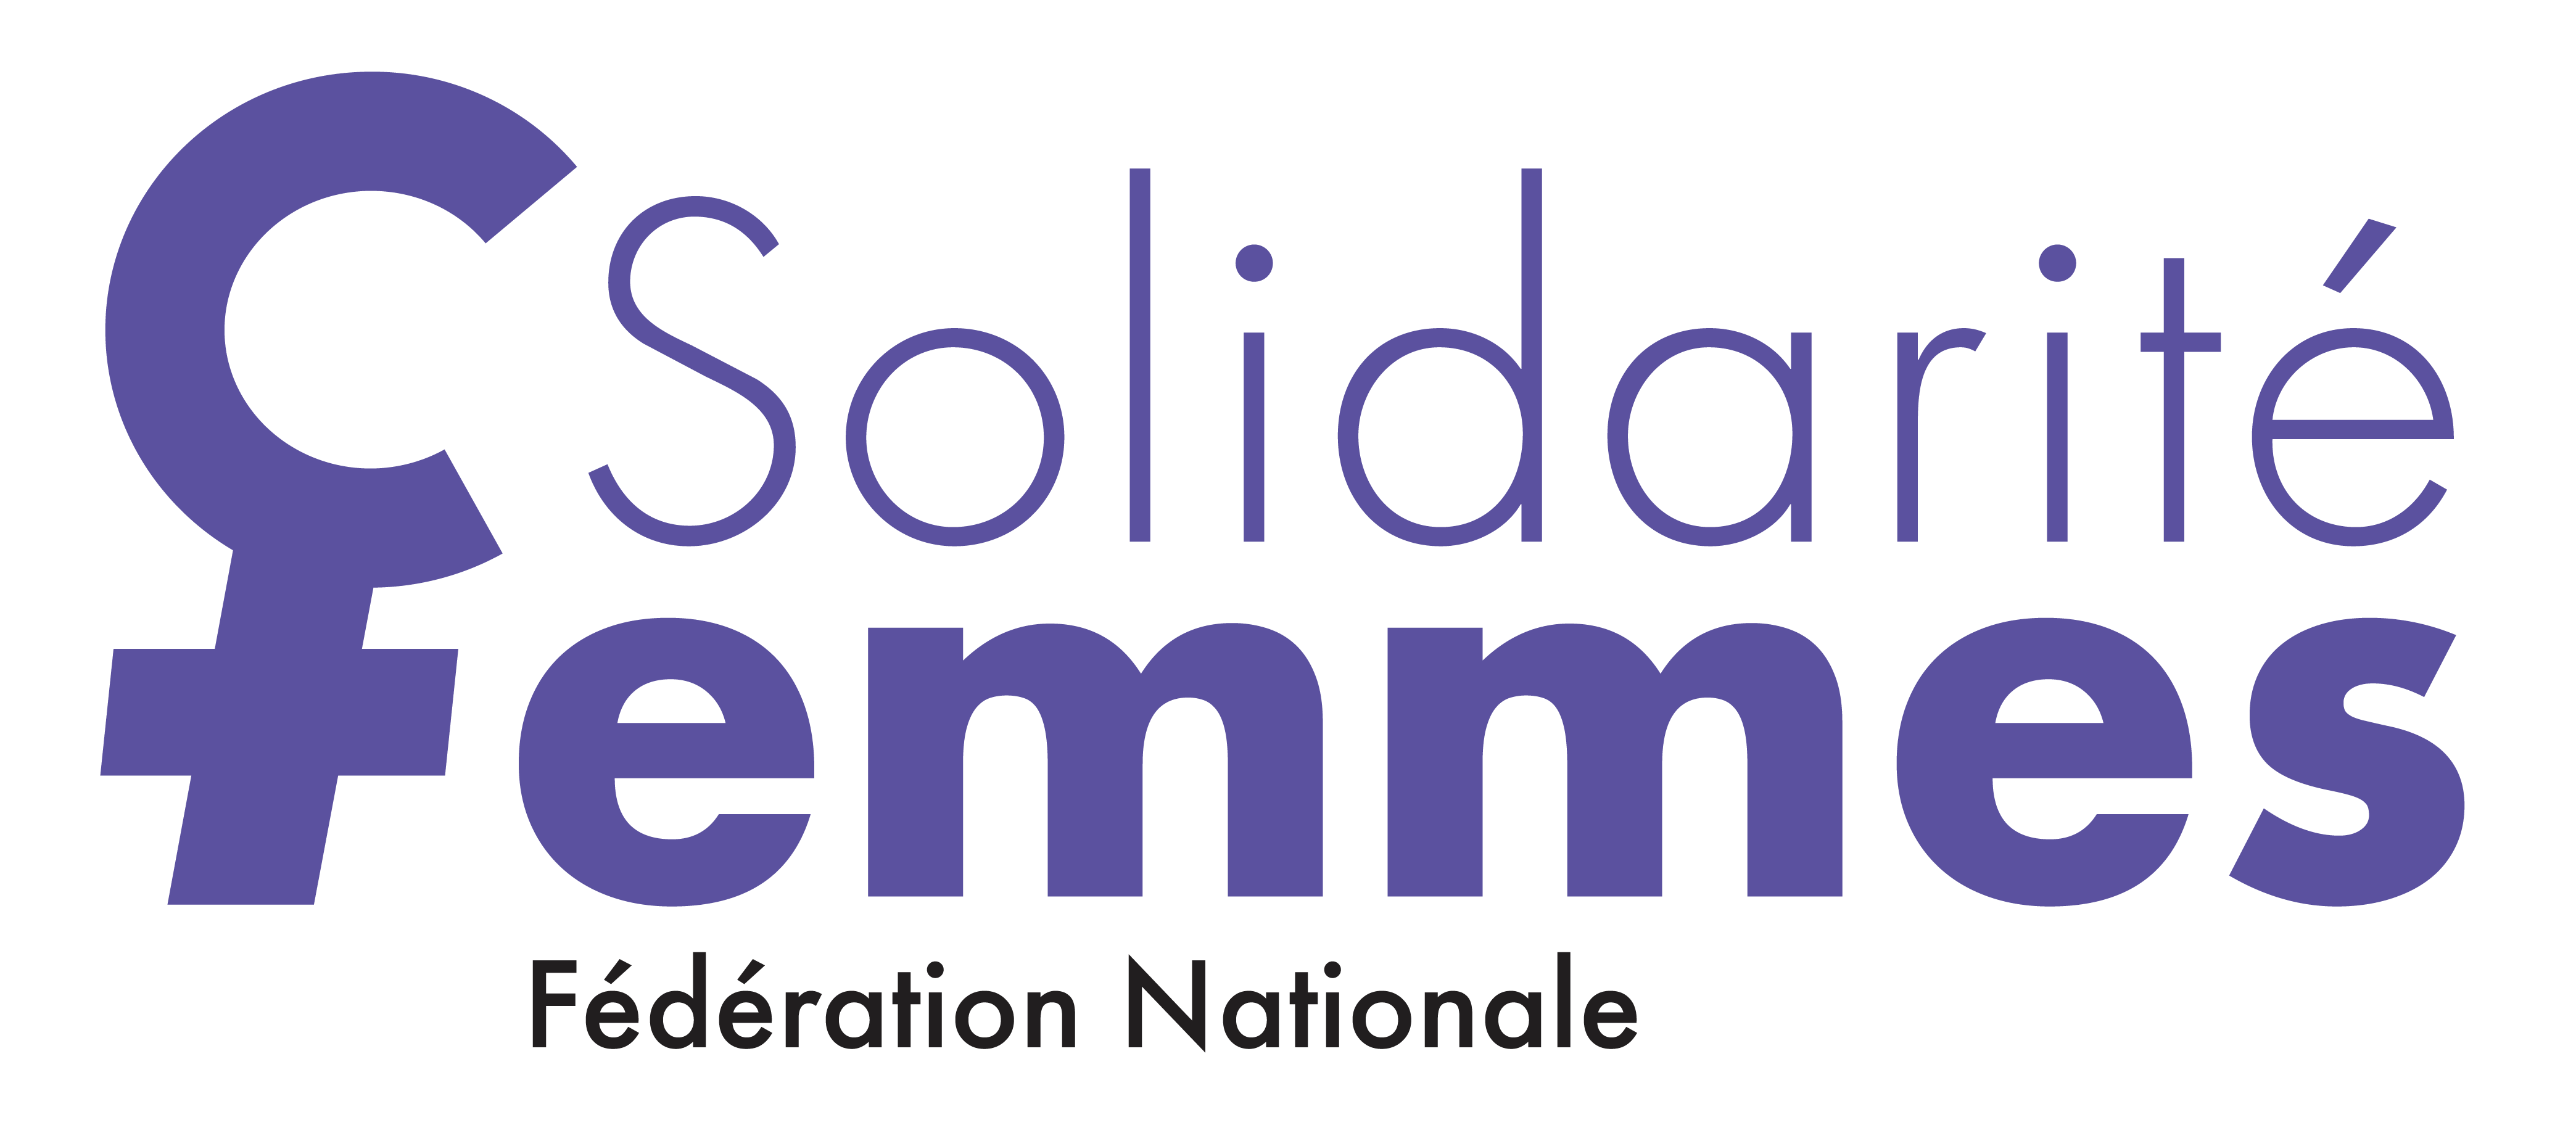 Le Groupe Odalys officialise aujourd'hui la mise à disposition de 100 logements aux 73 associations Solidarité Femmes de la FNSF